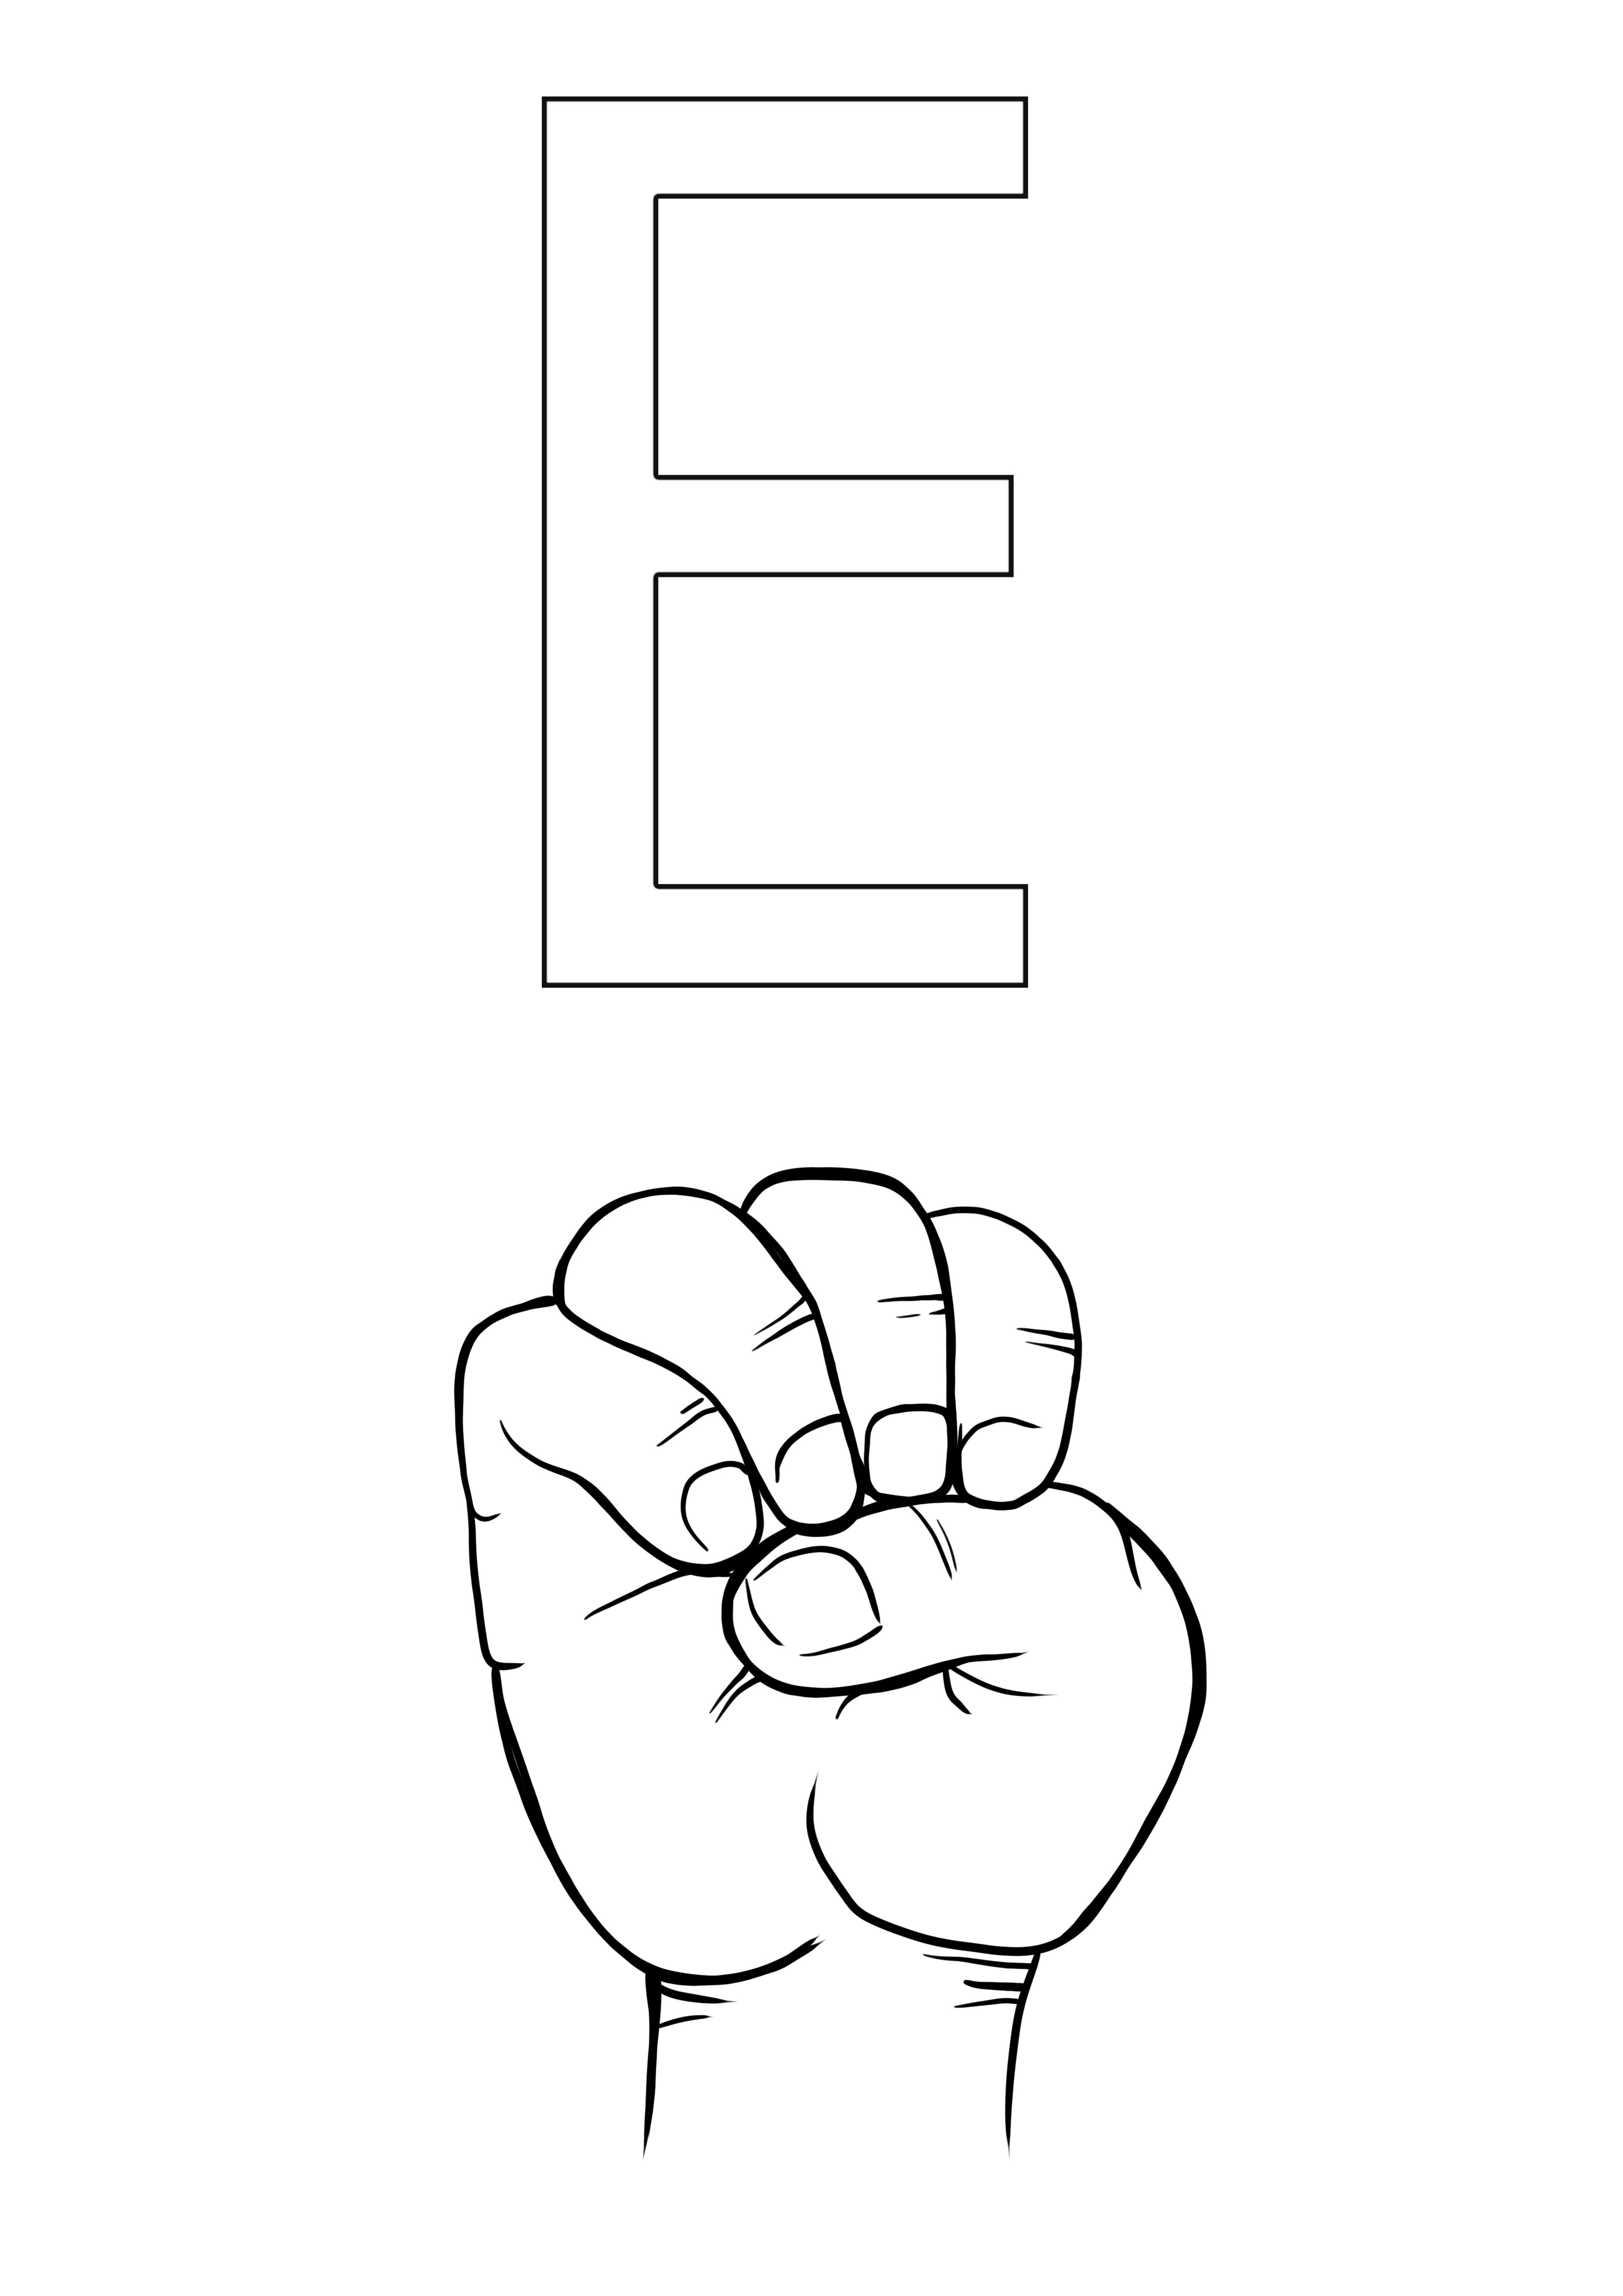 ASL letra E para colorear e imprimir gratis